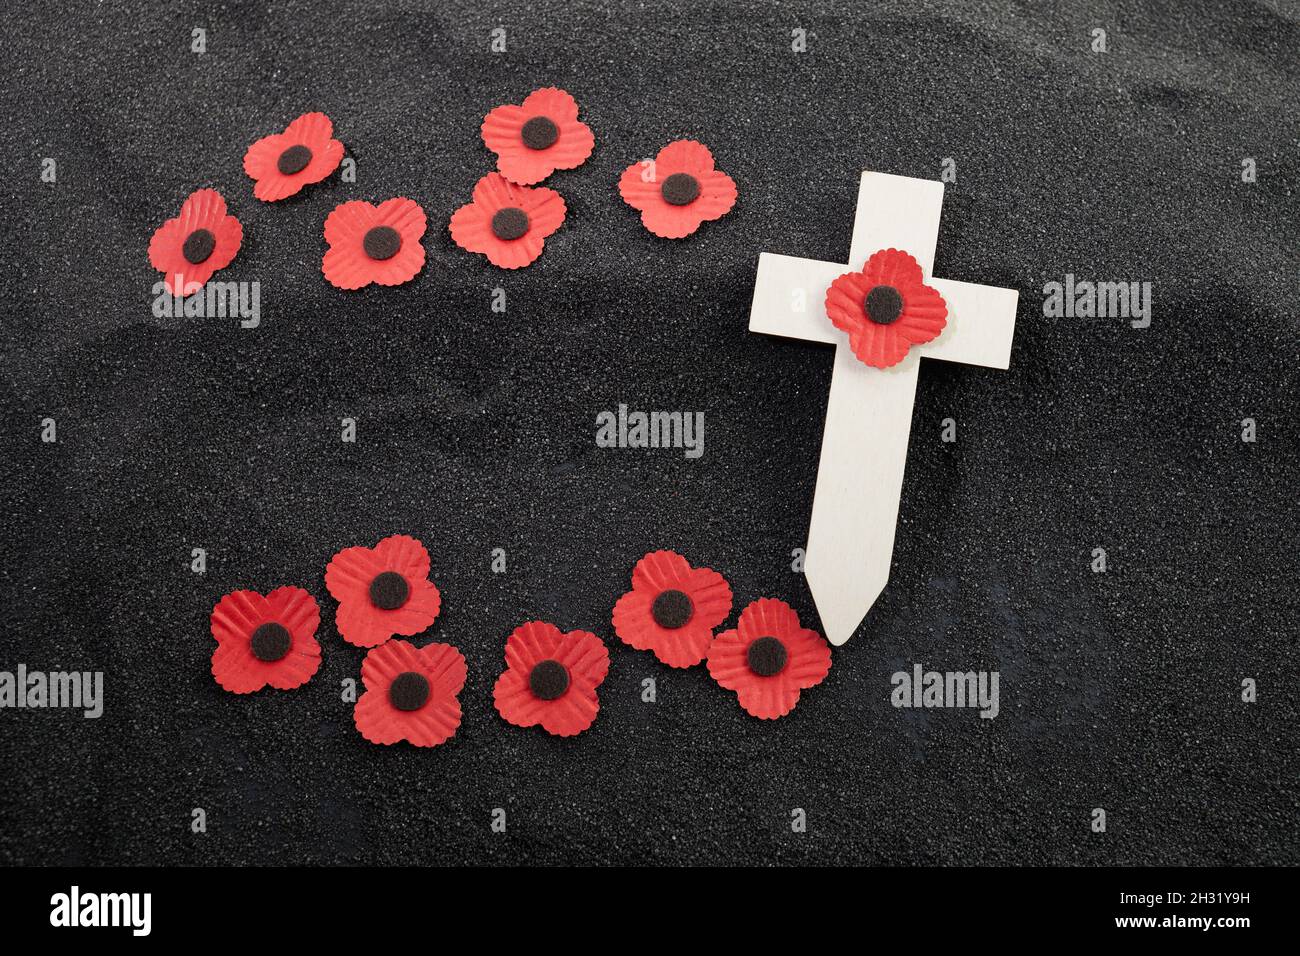 Día De La Conmemoración De La Guerra Mundial. La Amapola Roja Es Símbolo De  Recuerdo De Los Caídos En La Guerra. Amapolas Rojas Sobre Fondo De Piedra  Oscura Fotos, retratos, imágenes y